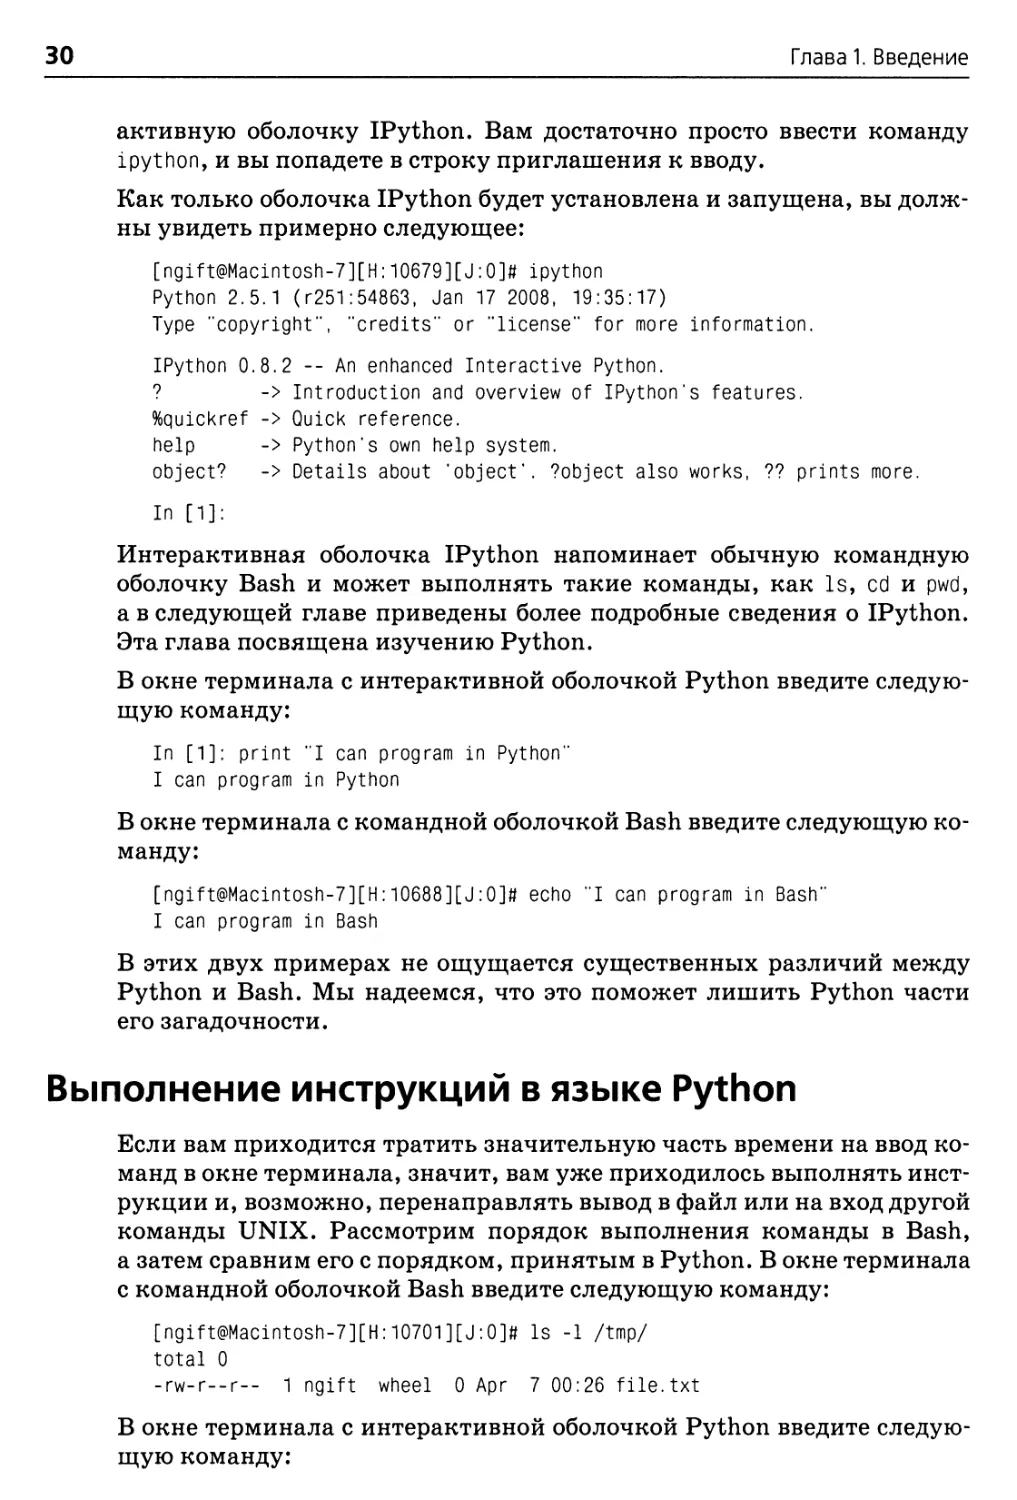 Выполнение инструкций в языке Python